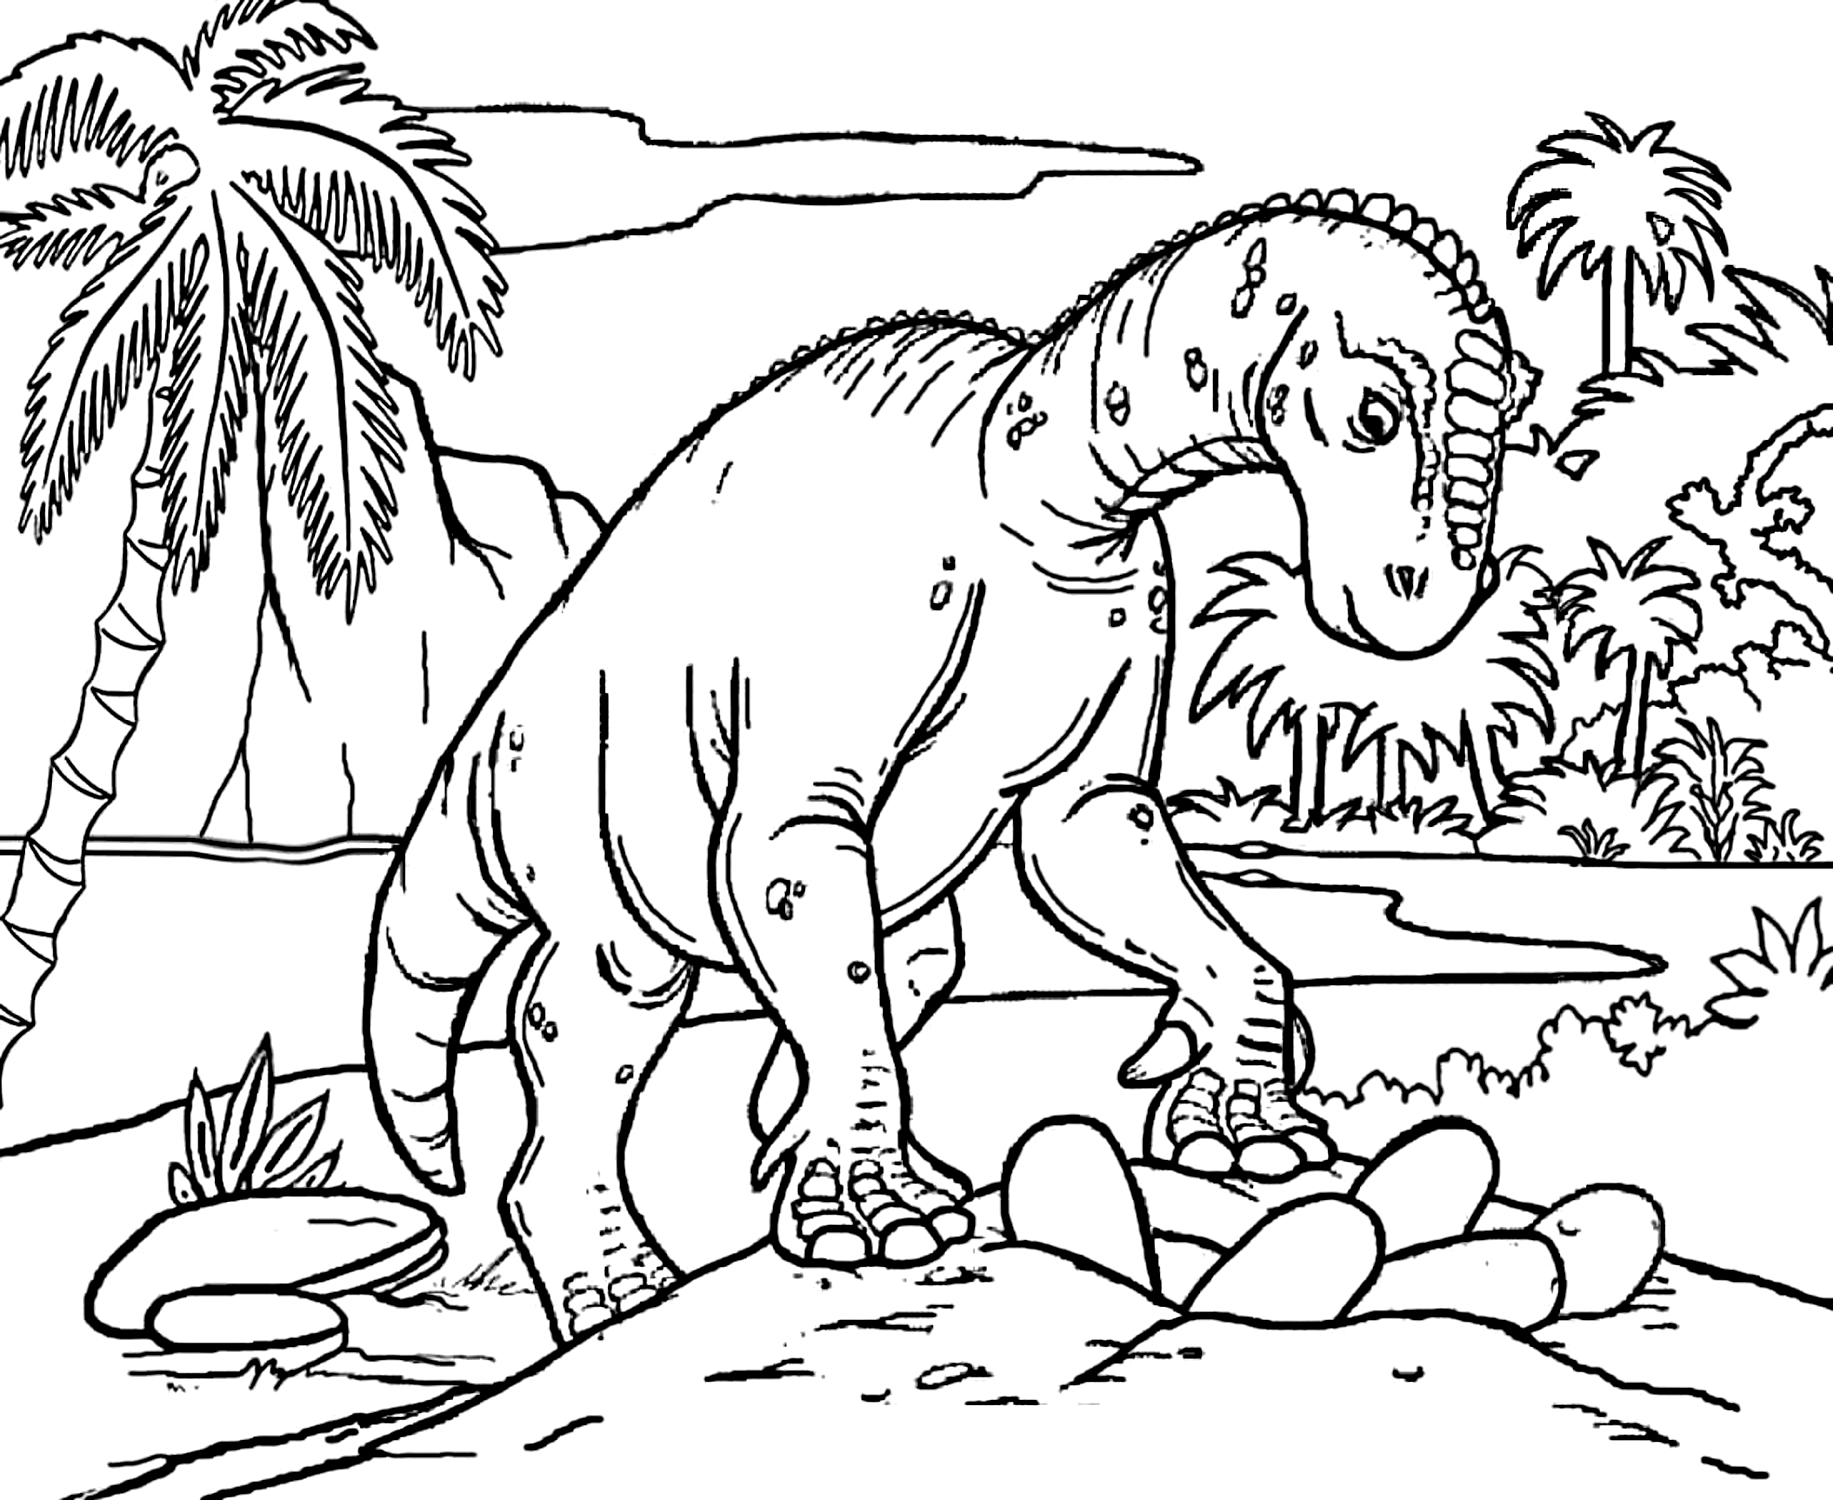 Dibujo 03 de Jurassic World para imprimir y colorear